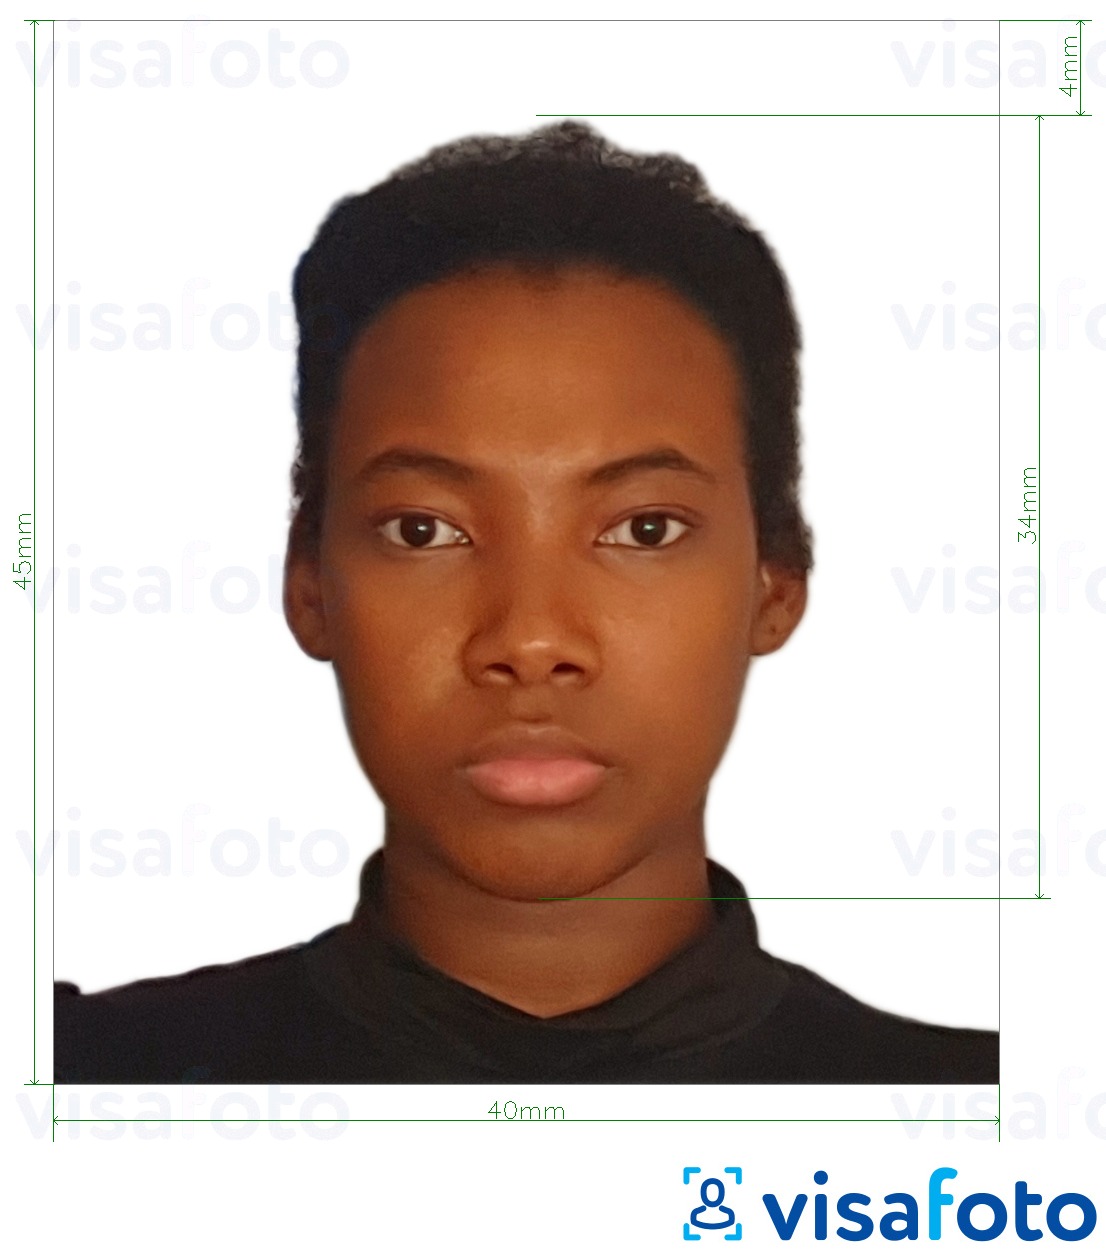 Ejemplo de foto para Pasaporte de Tanzania 40x45 mm (4x4.5 cm) con la especificación del tamaño exacto